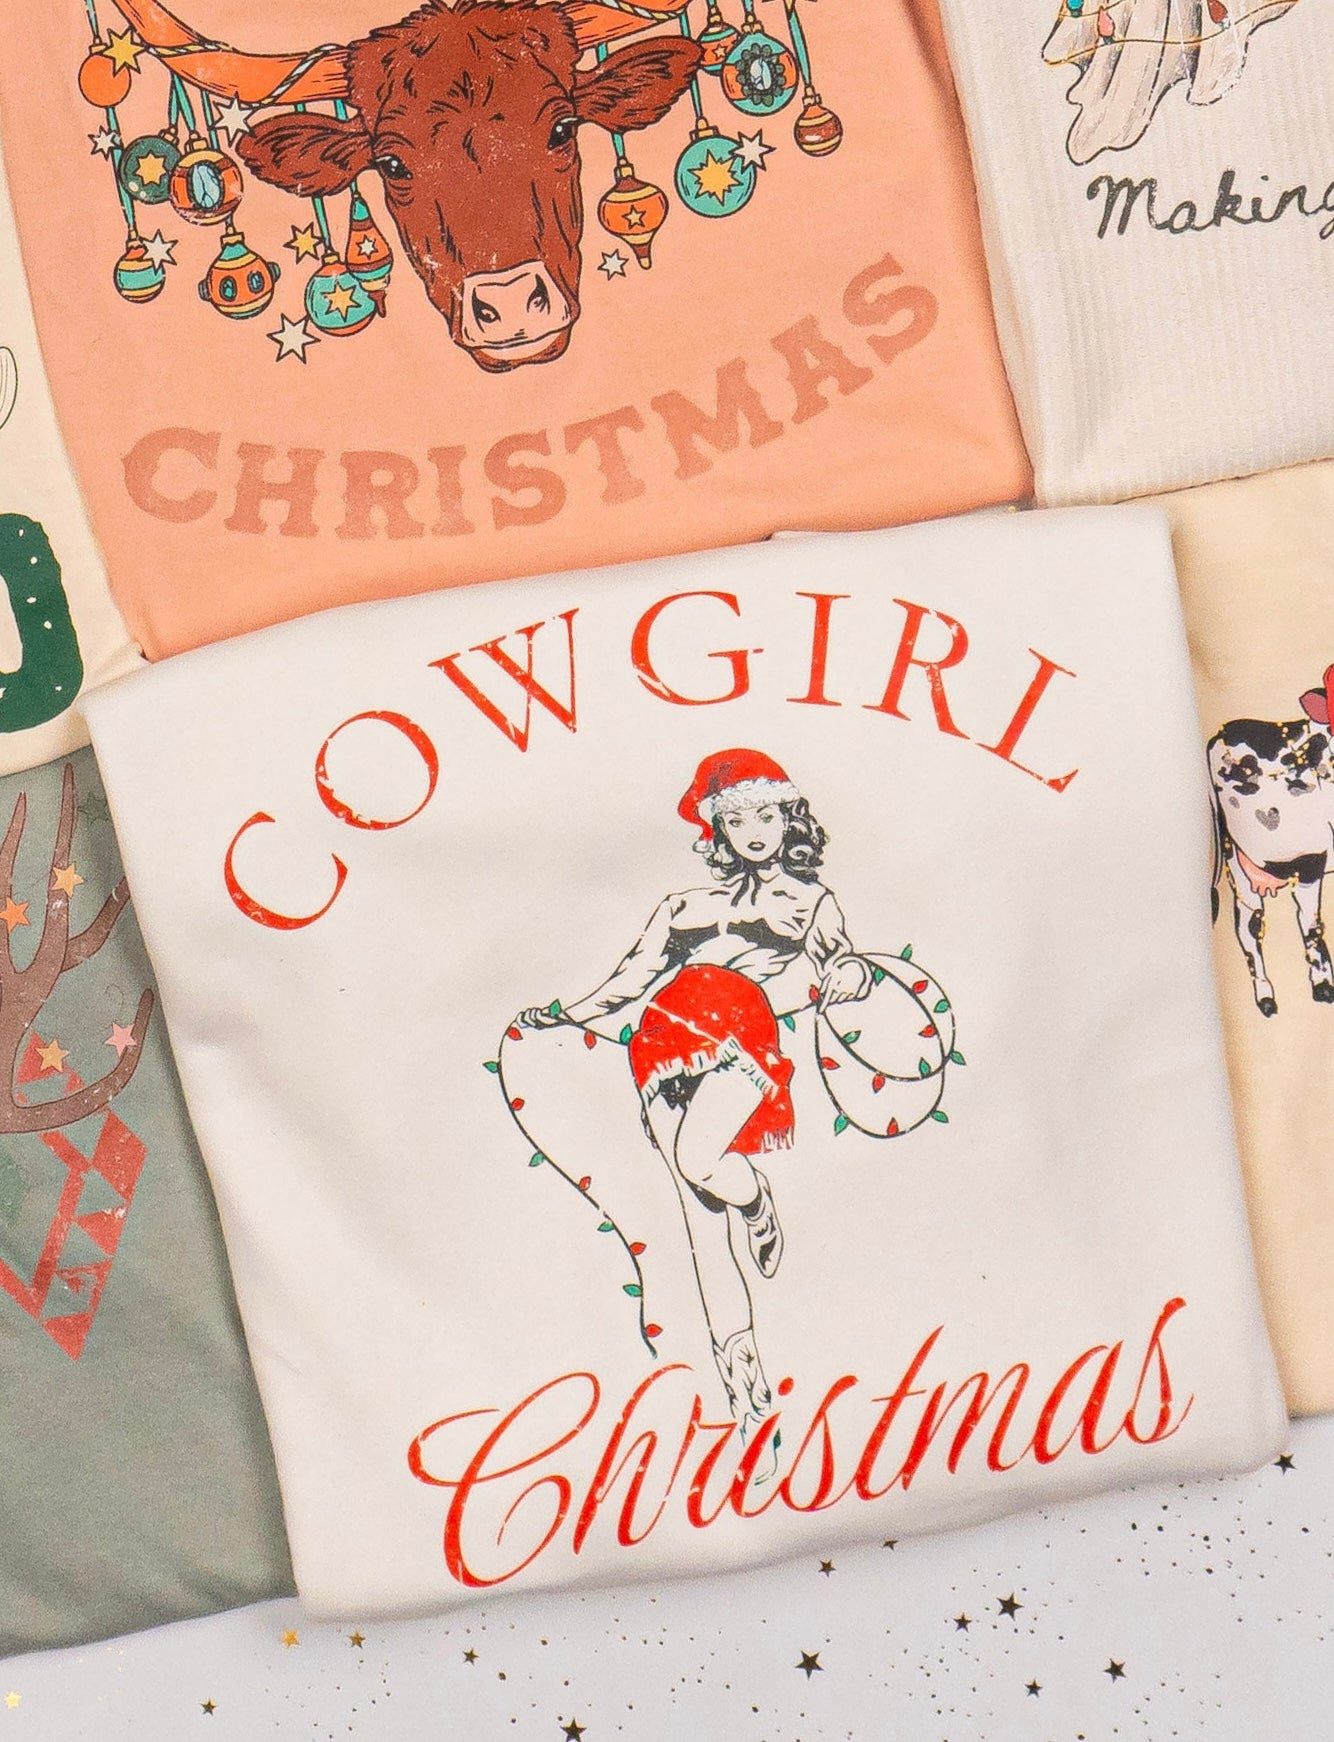 Cowgirl Christmas - Sweatshirt (Creme)